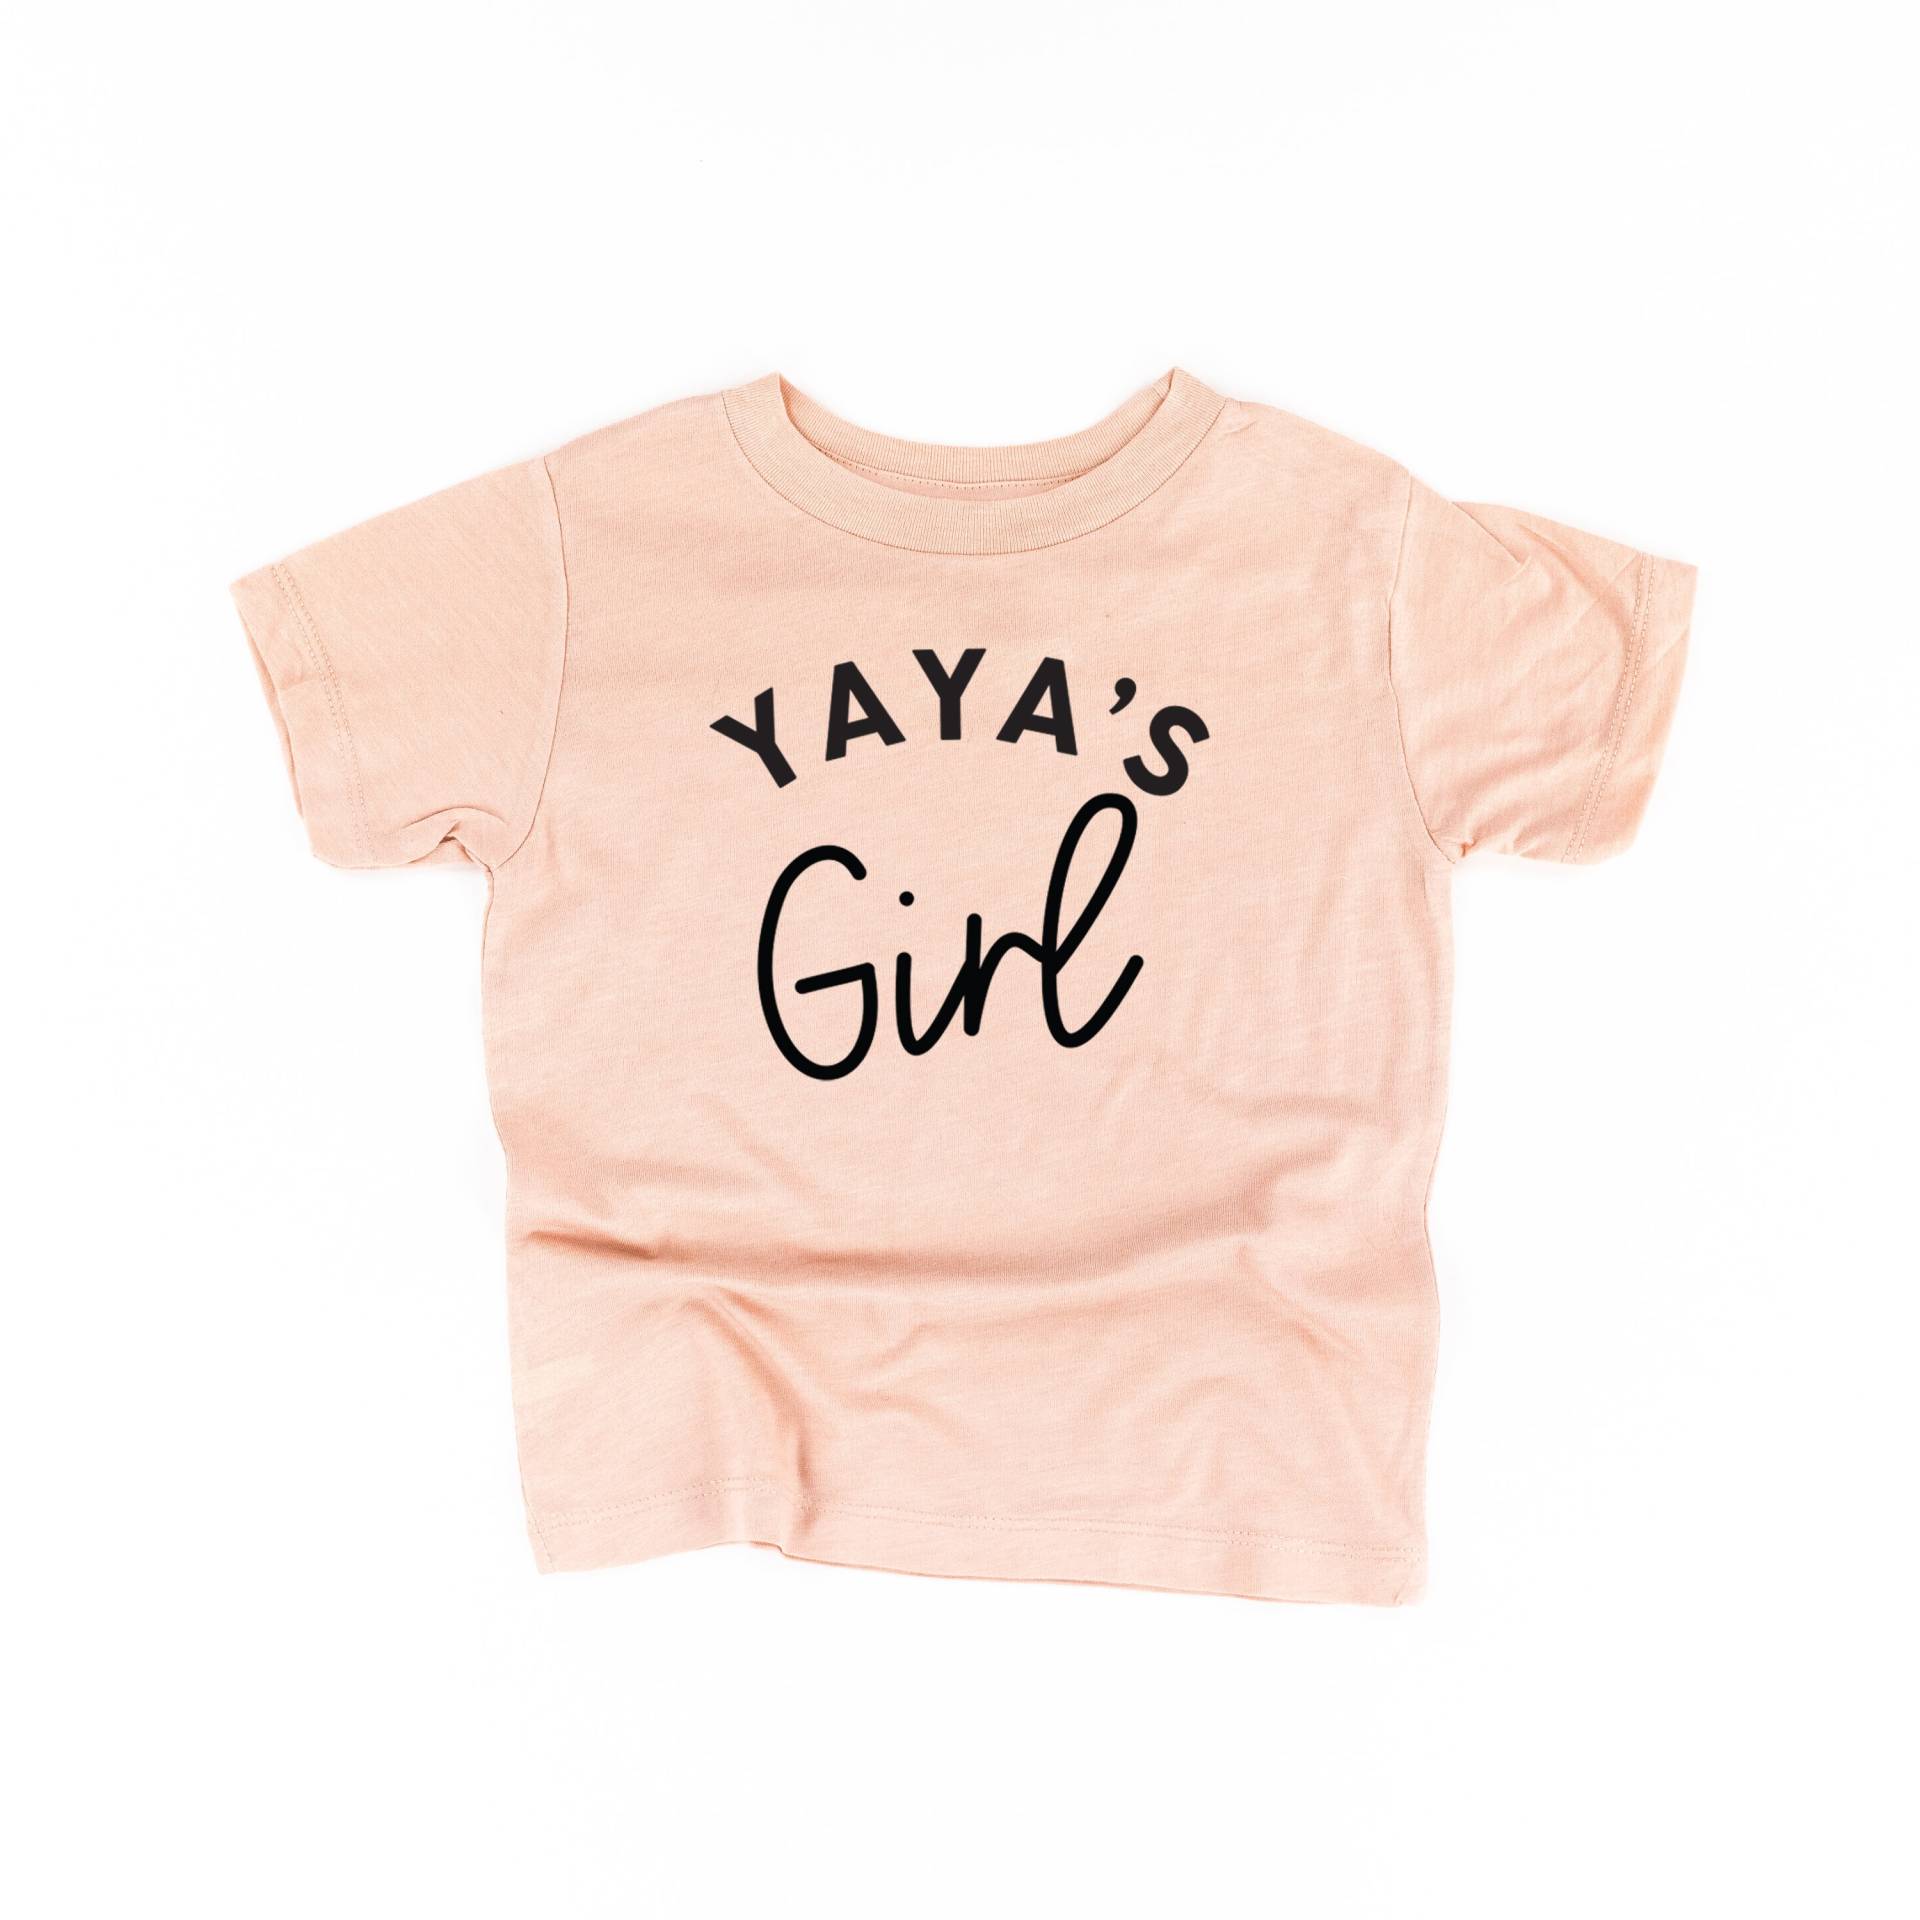 Yayas Mädchen | Kleinkind Shirt Shirts Für Kleine T-Shirts Baby Omas von LittleMamaShirtShop